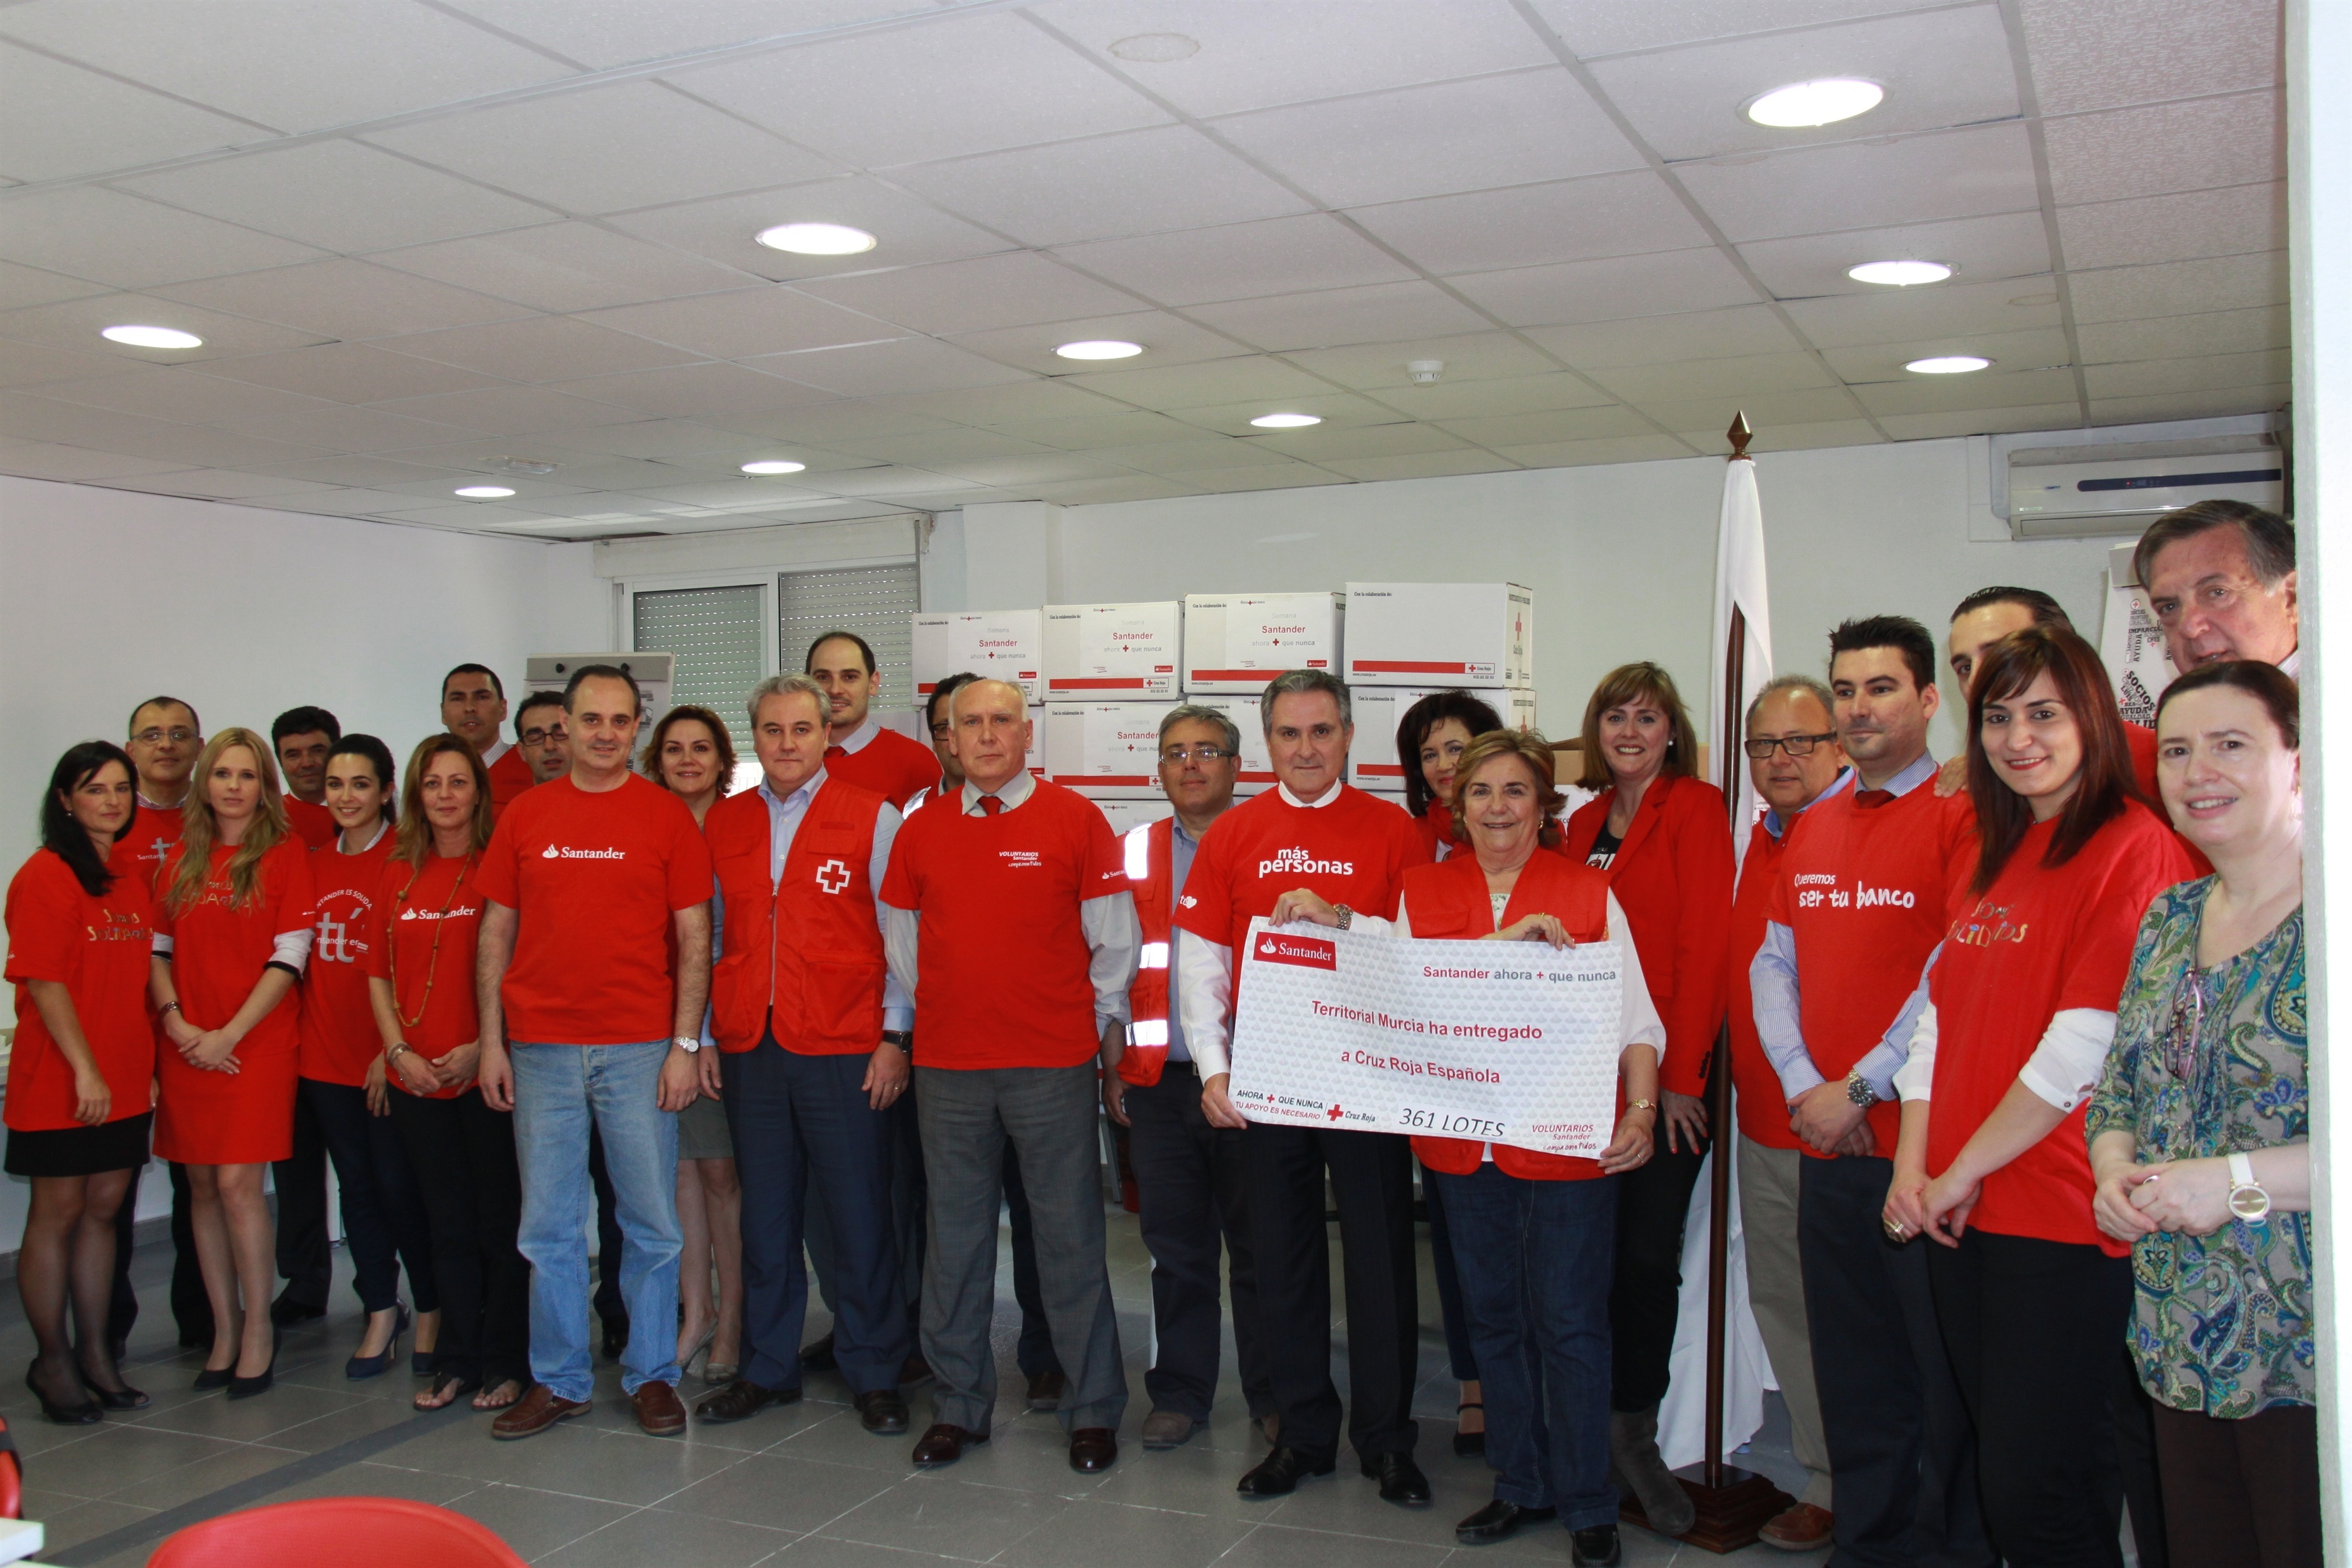 Clientes y empleados del Banco Santander aportan más de 8.300 euros a Cruz Roja en la Región de Murcia